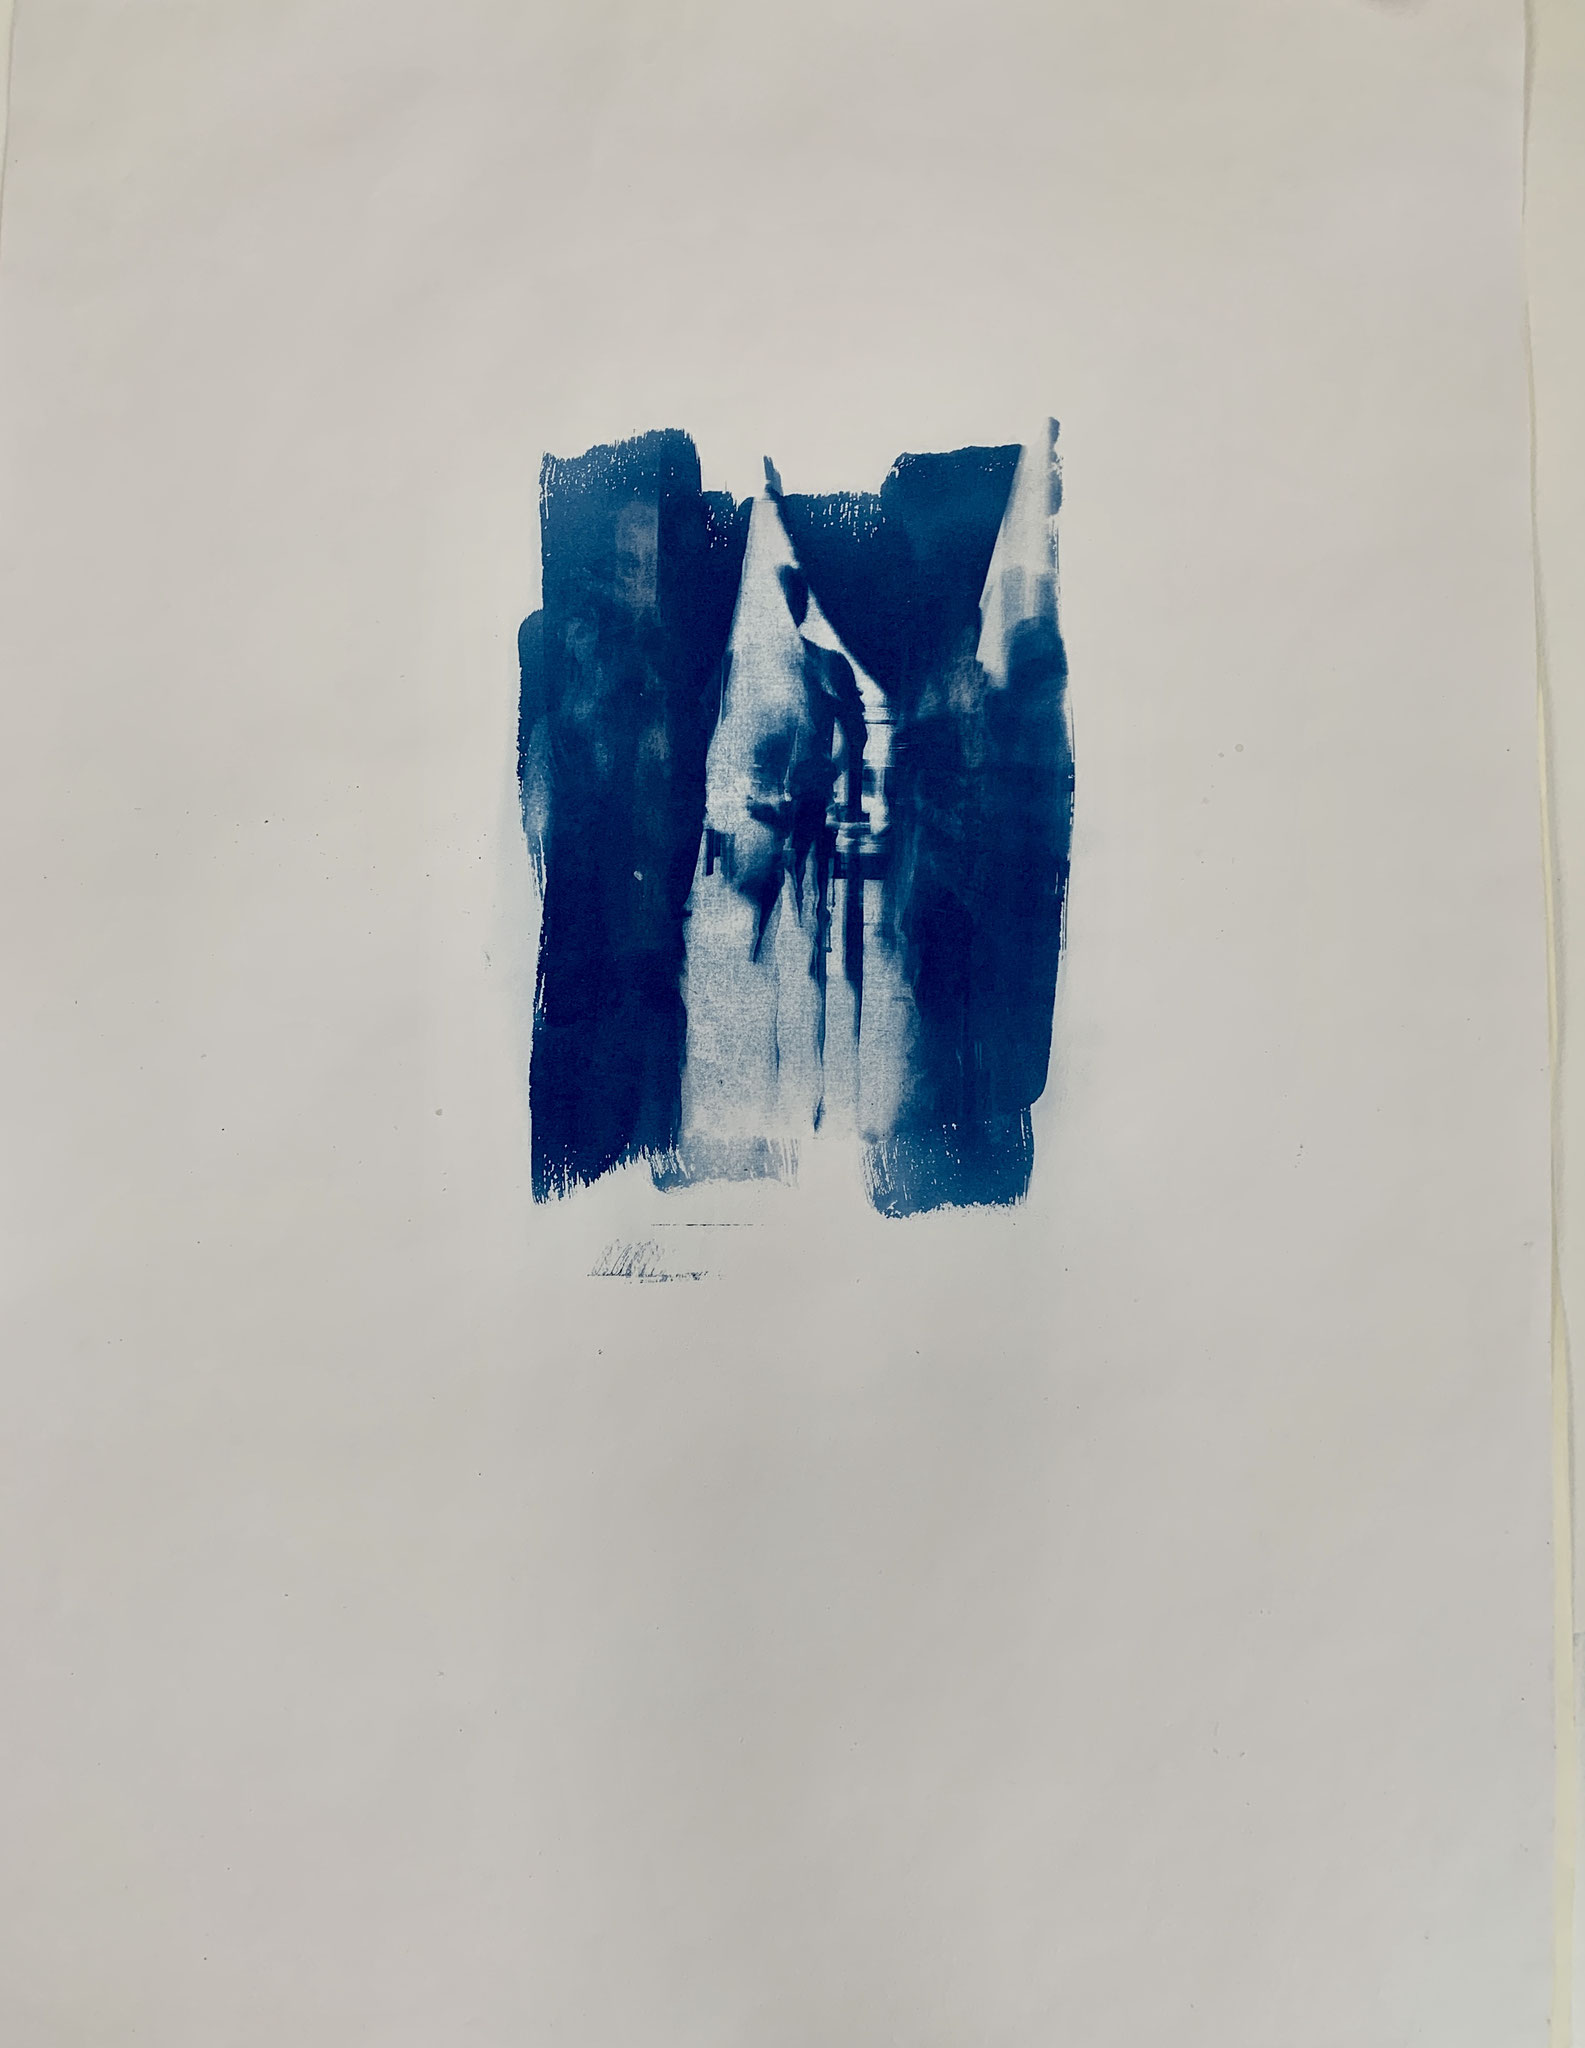 Alleinige Bindung, Cyanotypie, 50 x 70 cm,  2020